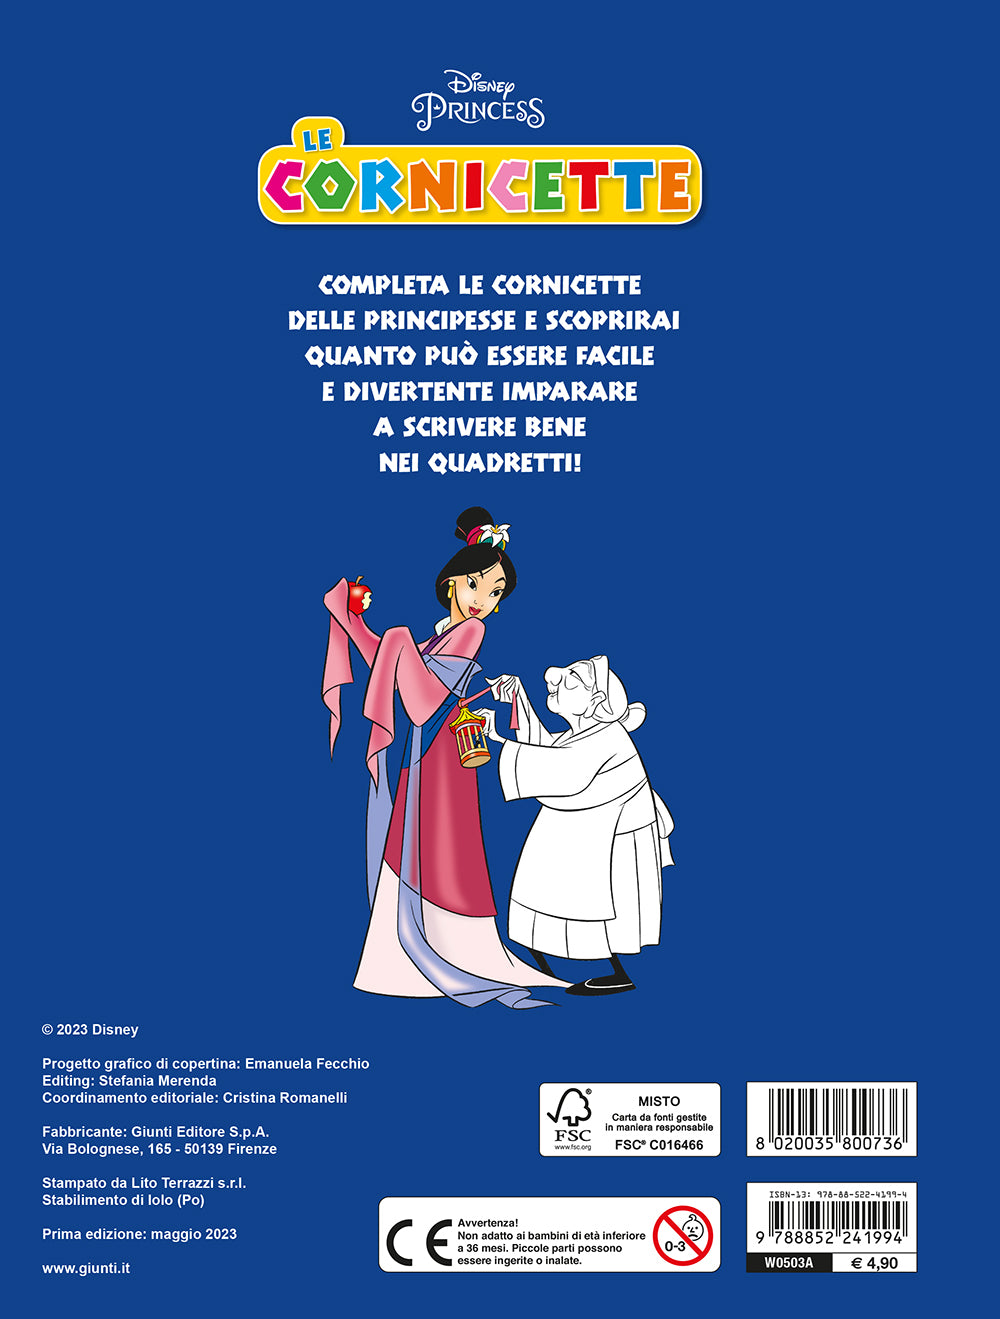 Cornicette Disney Princess - Colori in festa